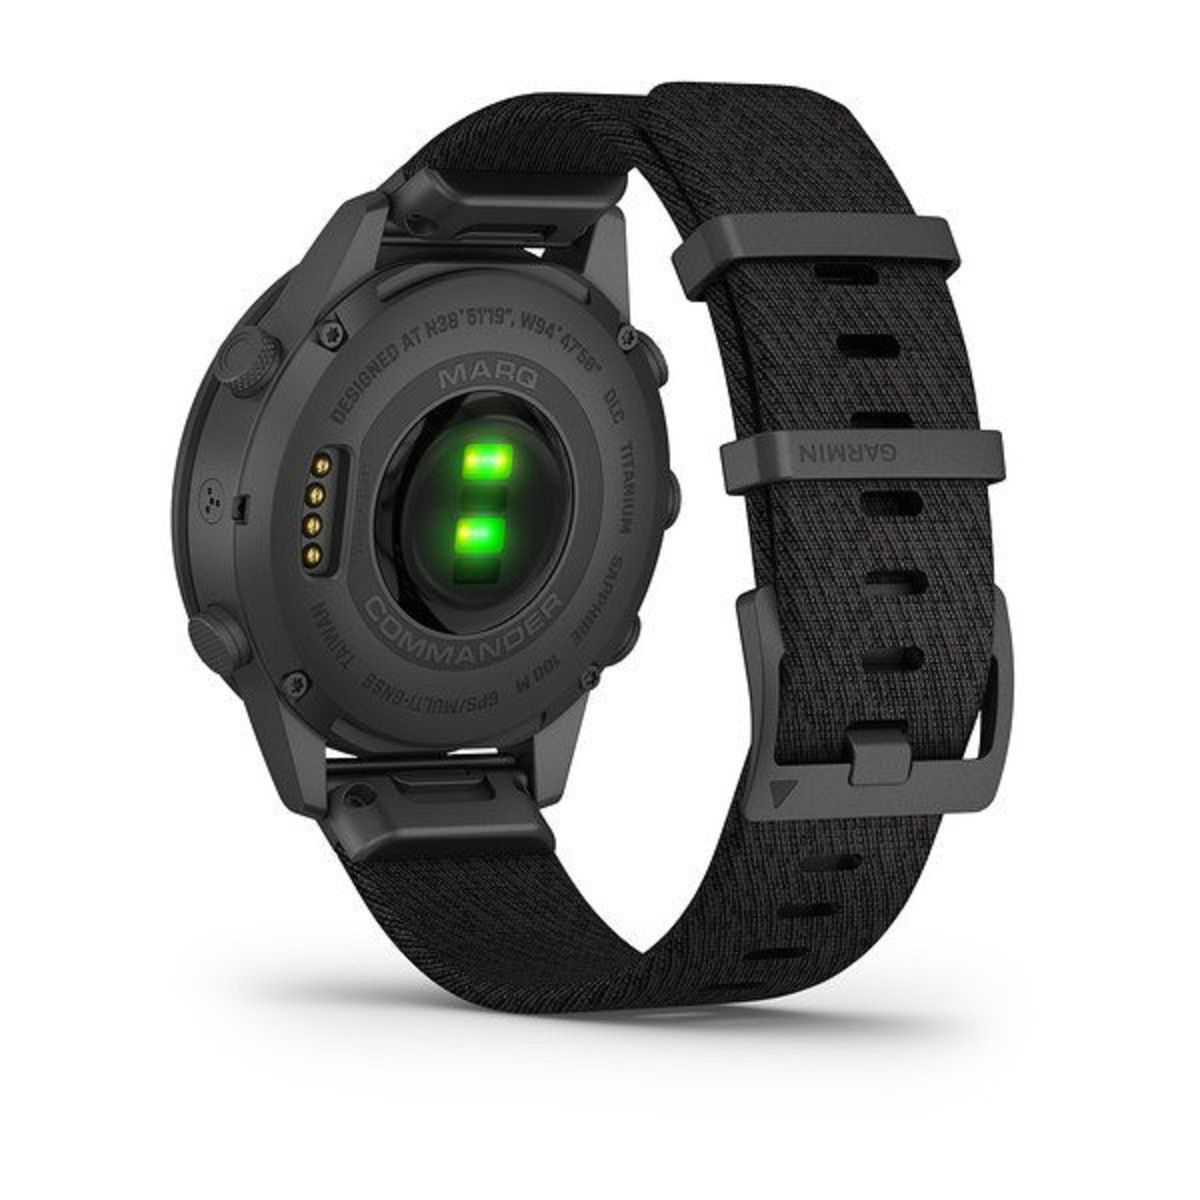 Garmin zaprezentował kolejnego smartwatcha z serii MARQ. Jest niezwykle wytrzymały [WIDEO]